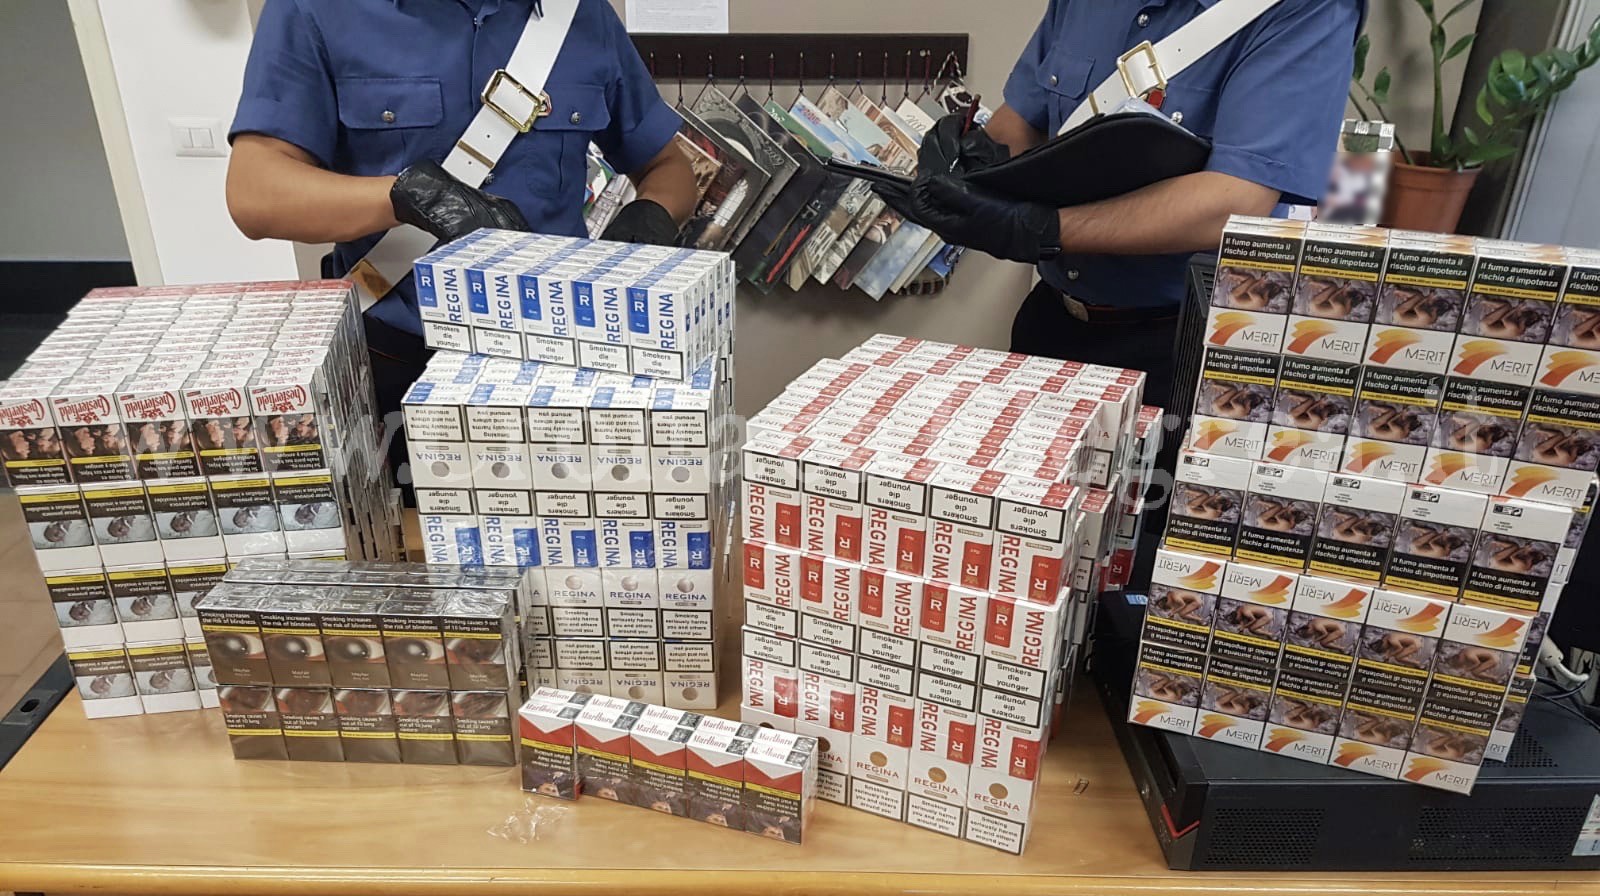 Oltre 100 stecche di sigarette di contrabbando nell’armadio, arrestate due donne